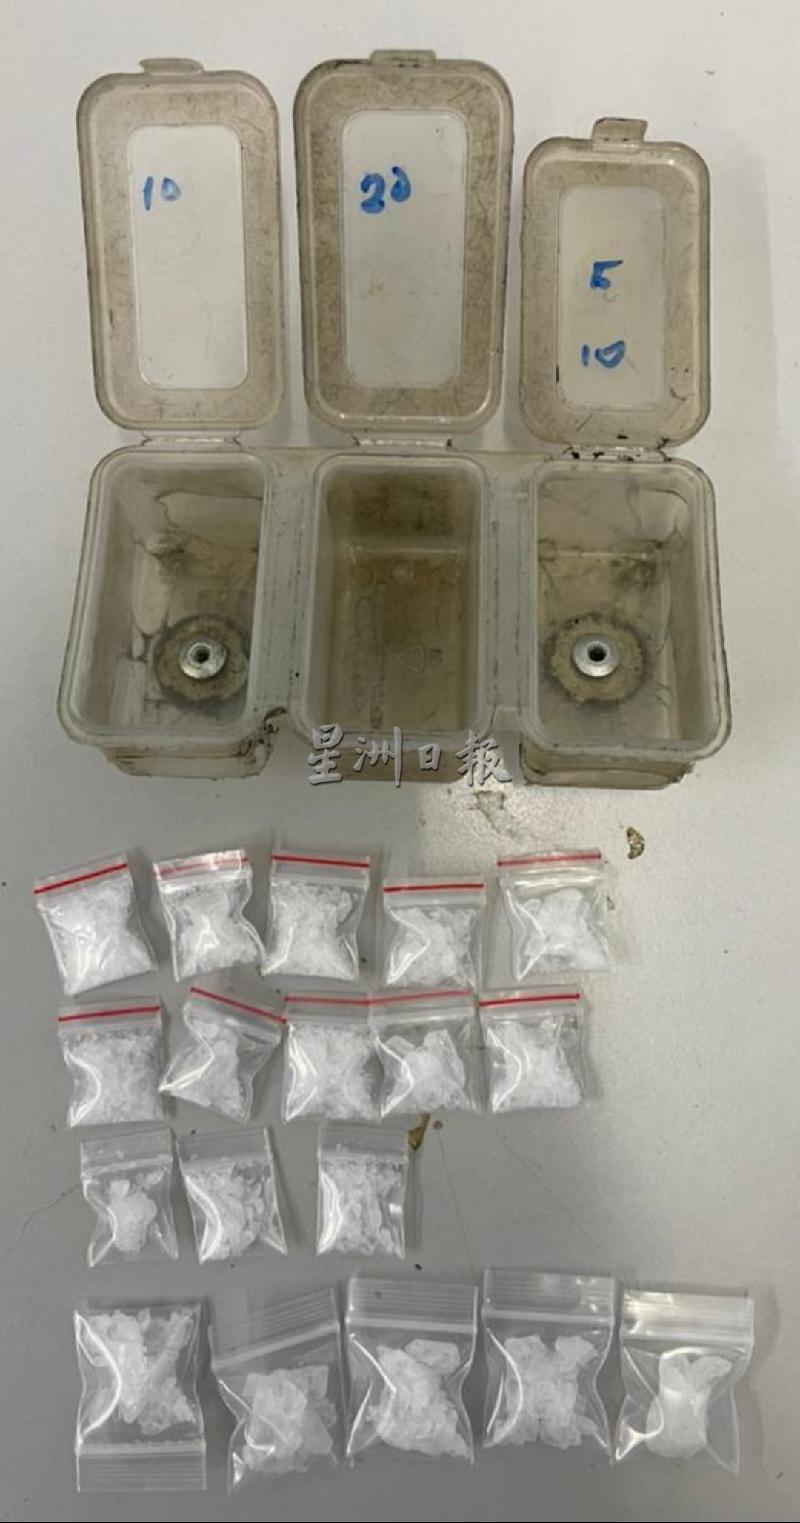 
警方在行动中搜获18小包冰毒。